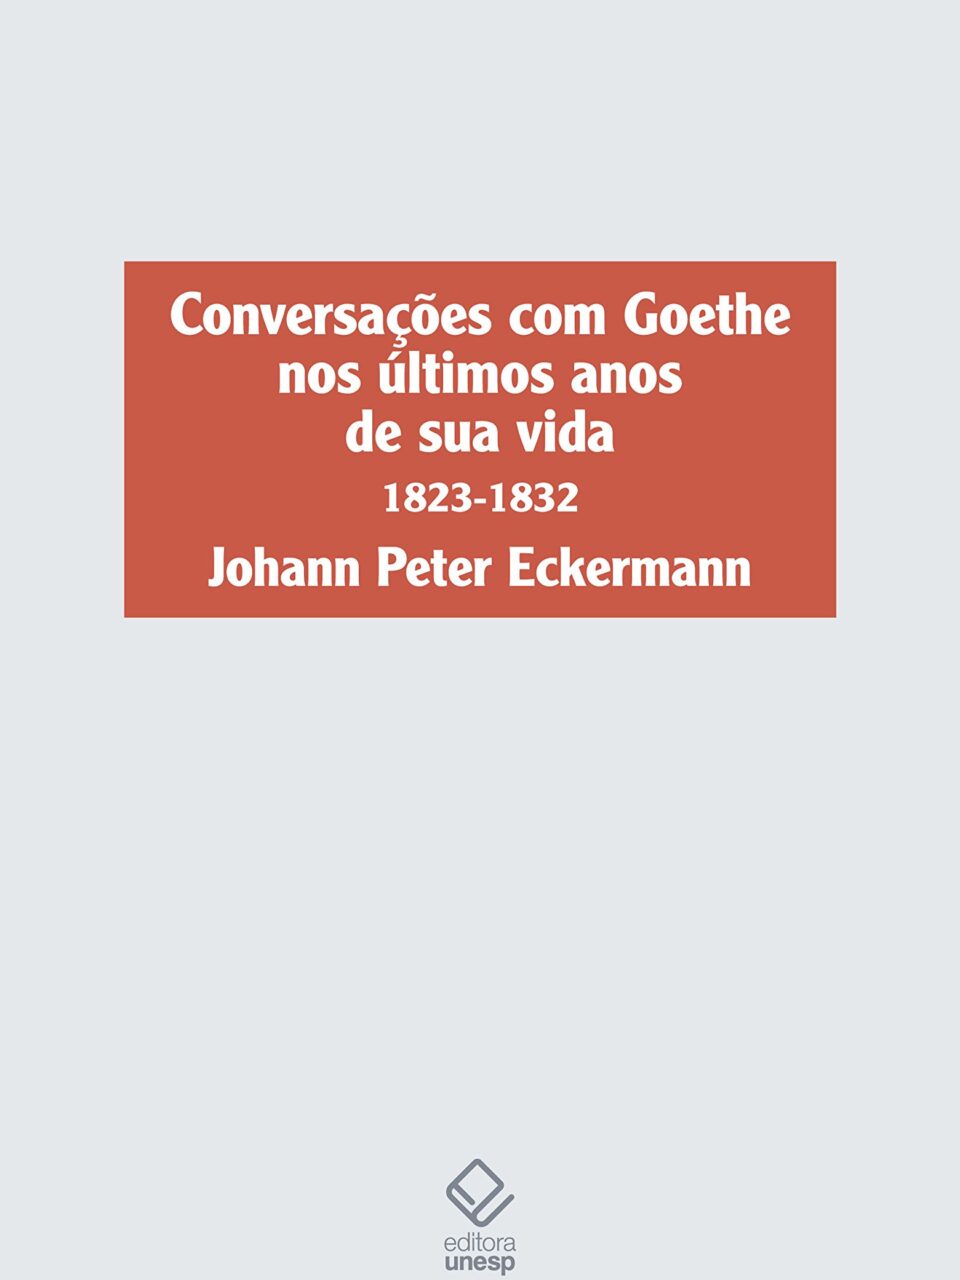 Conversações com Goethe nos últimos anos de sua vida (1823-1832) - Johann Peter Eckermann